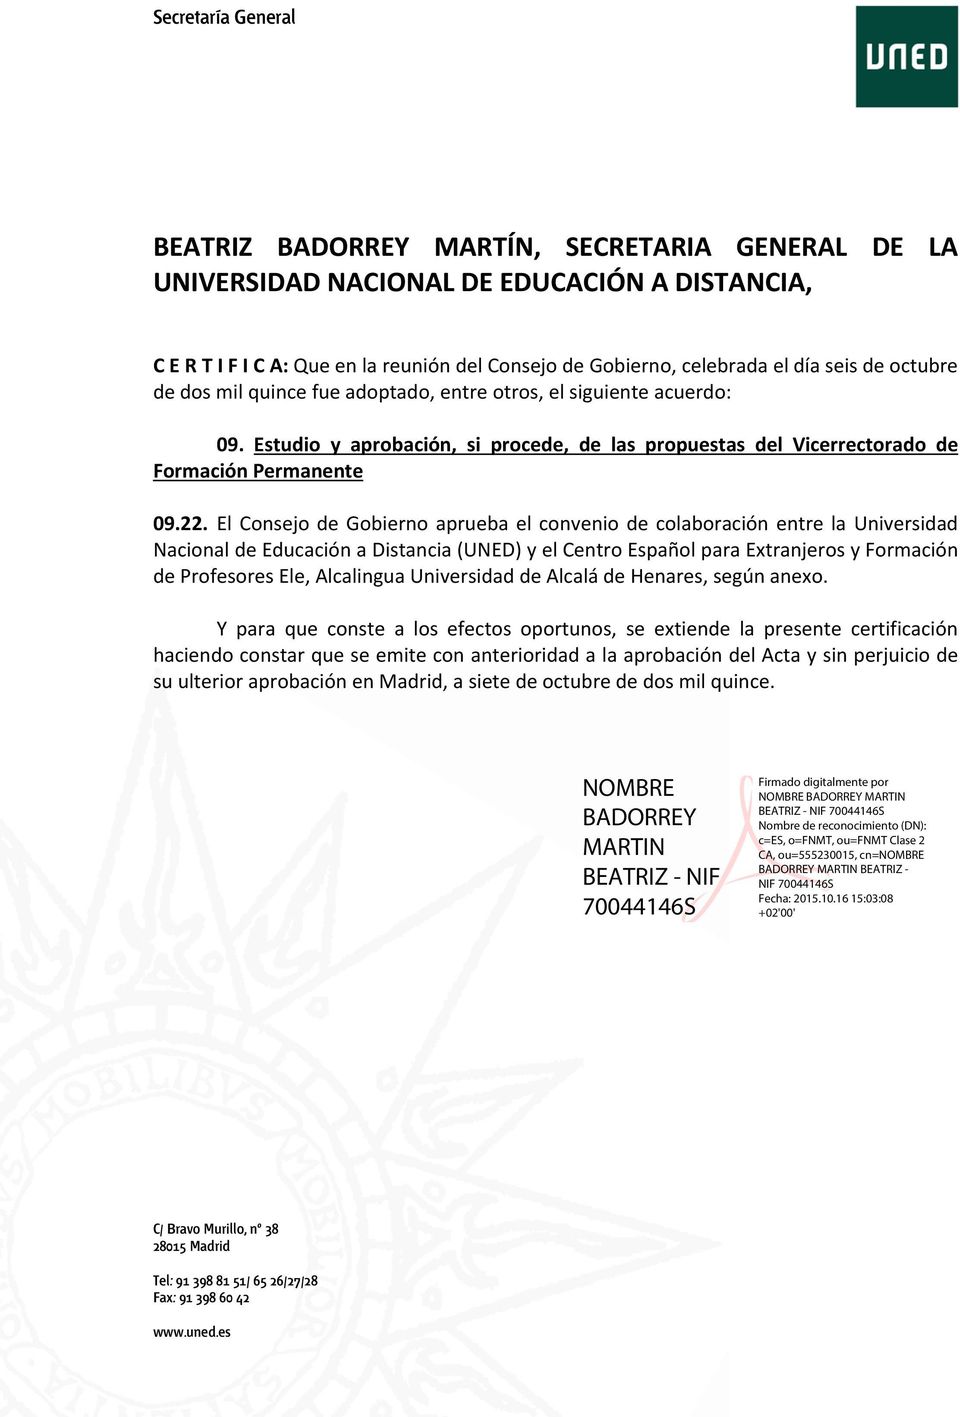 El Consejo de Gobierno aprueba el convenio de colaboración entre la Universidad Nacional de Educación a Distancia (UNED) y el Centro Español para Extranjeros y Formación de Profesores Ele, Alcalingua